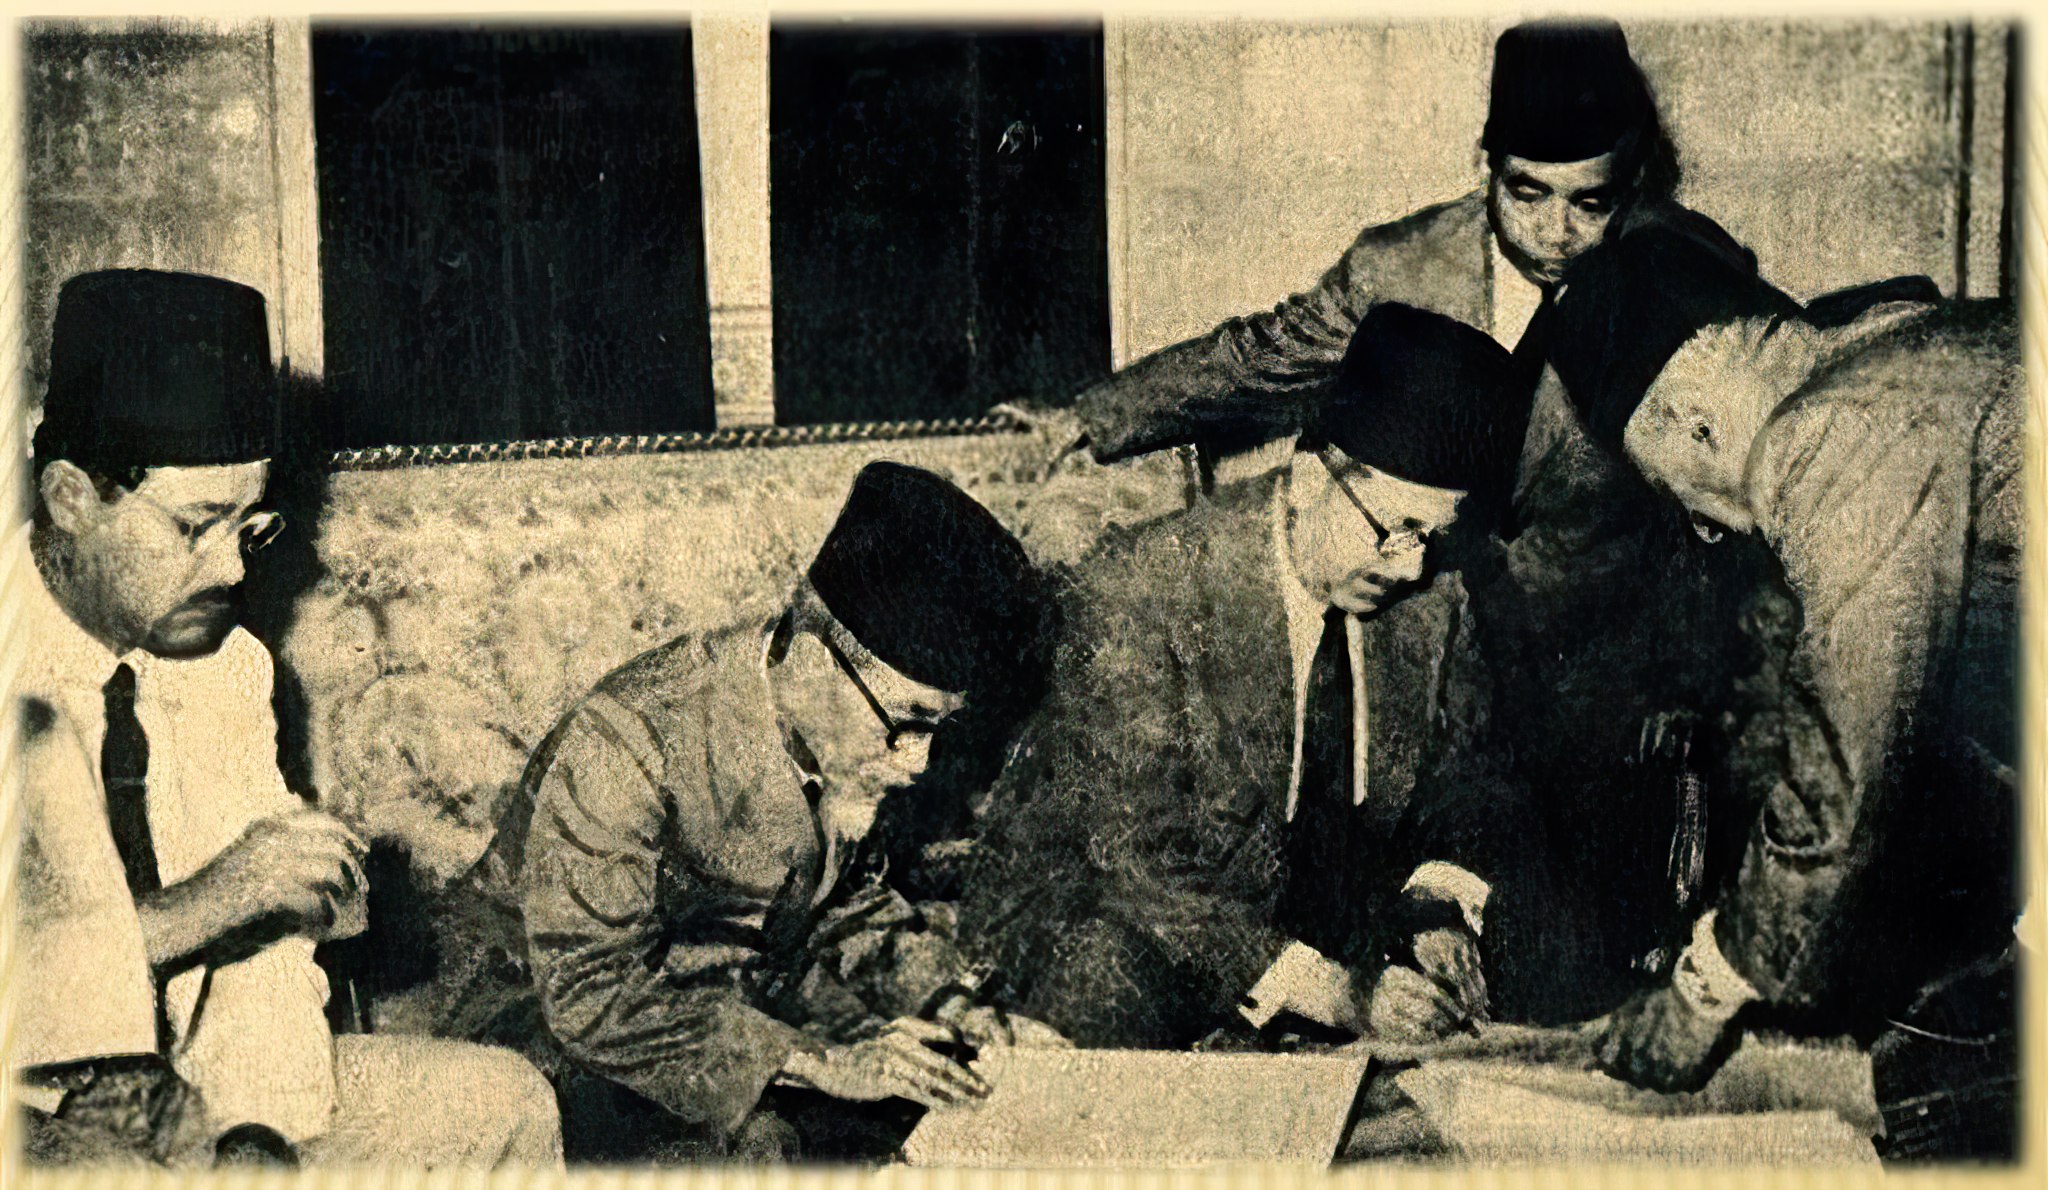 Negara Mesir adalah negara pertama yang secara de facto mengakui kemerdekaan Indonesia dan mengakui kedaulatan negara RI secara de jure. Hal ini ditandai dengan